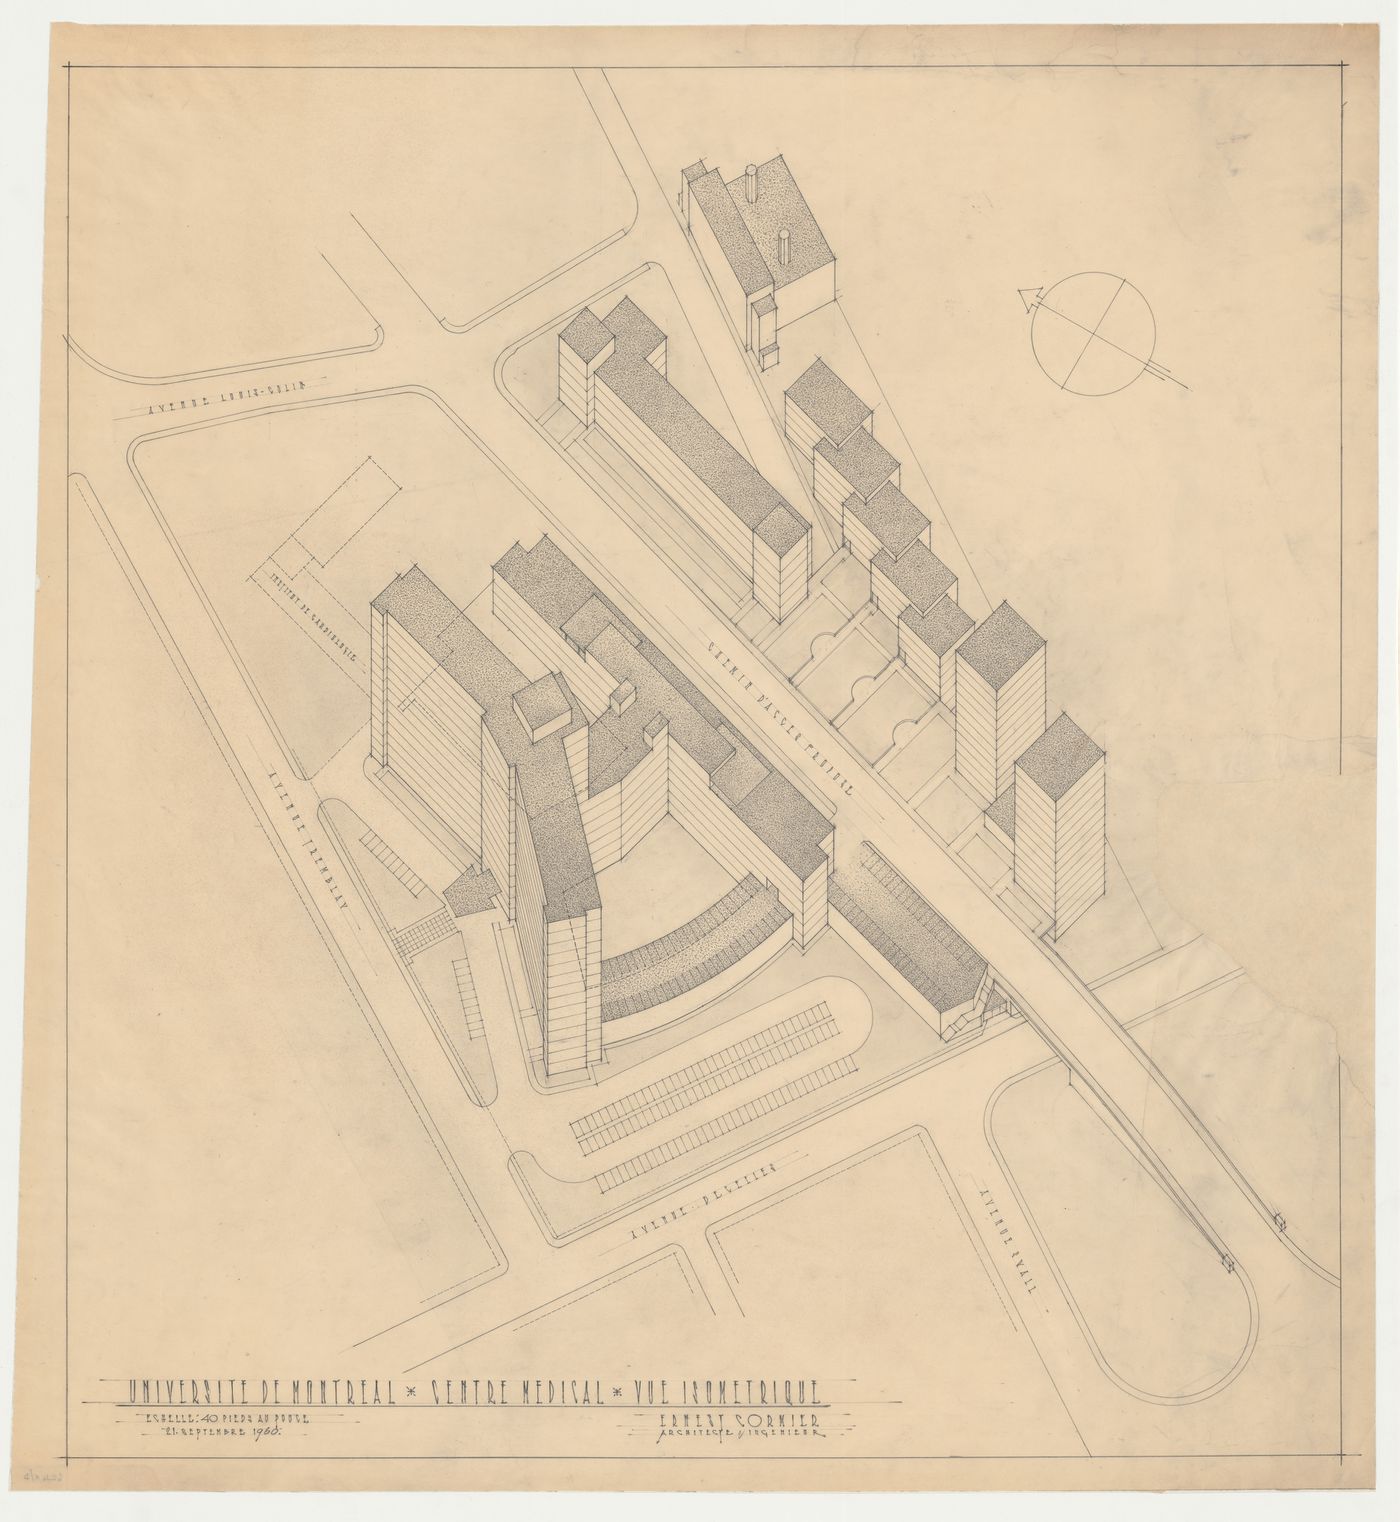 Vue isométrique, Centre hospitalier, Université de Montréal, Montréal, Canada (1950-1961)